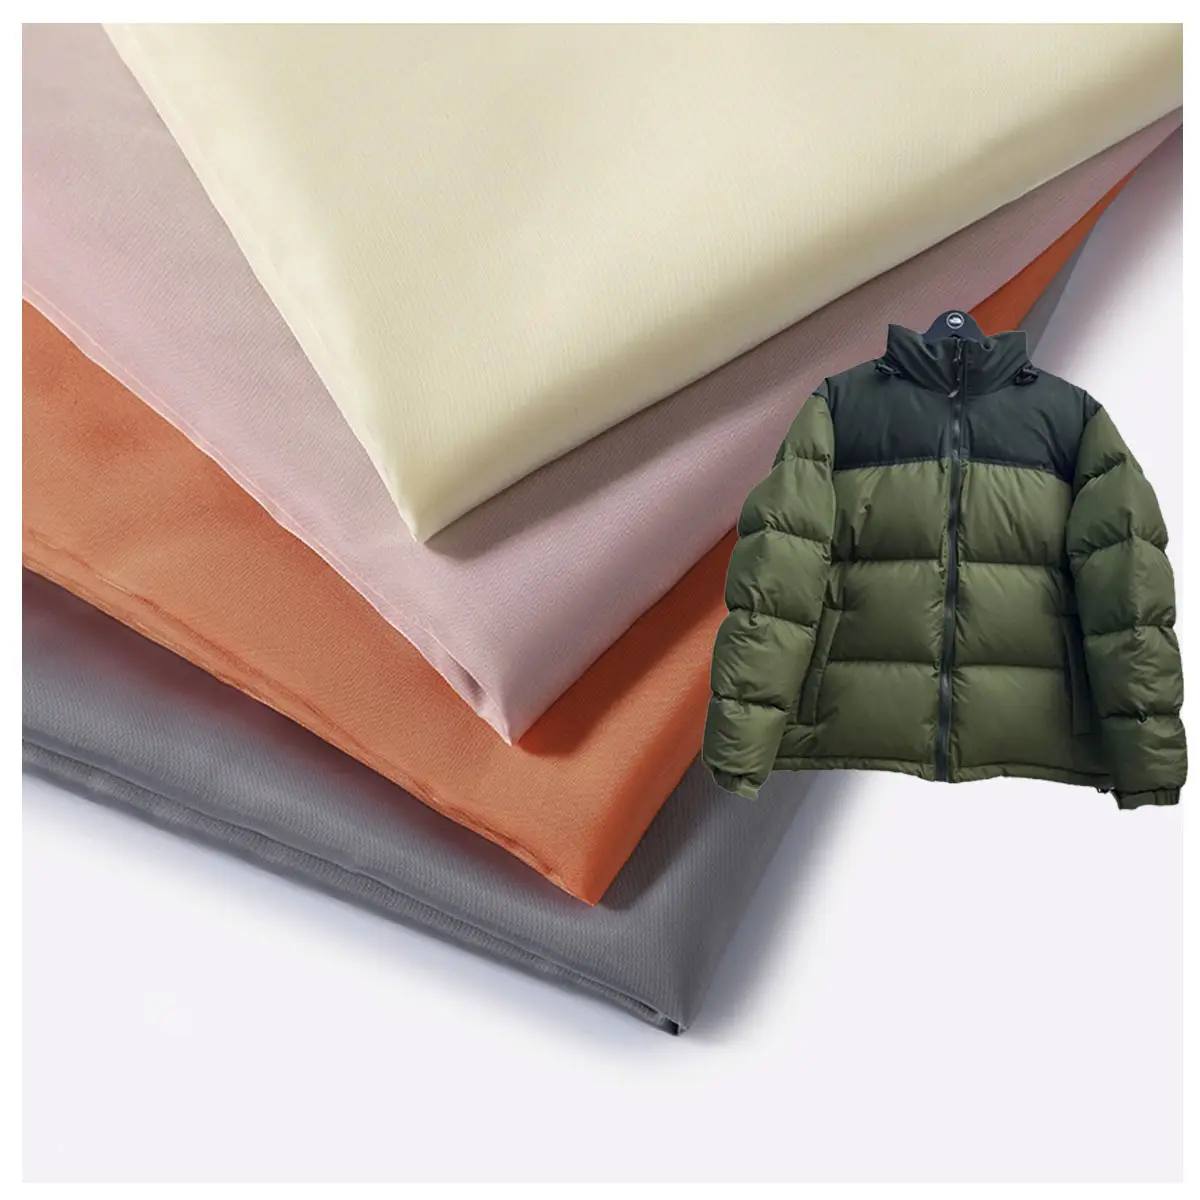 Kayak tulumu kış giyim yastıklı mont kabuk kumaş Polyester tafta kumaş PA kaplı su itici W/R kumaş